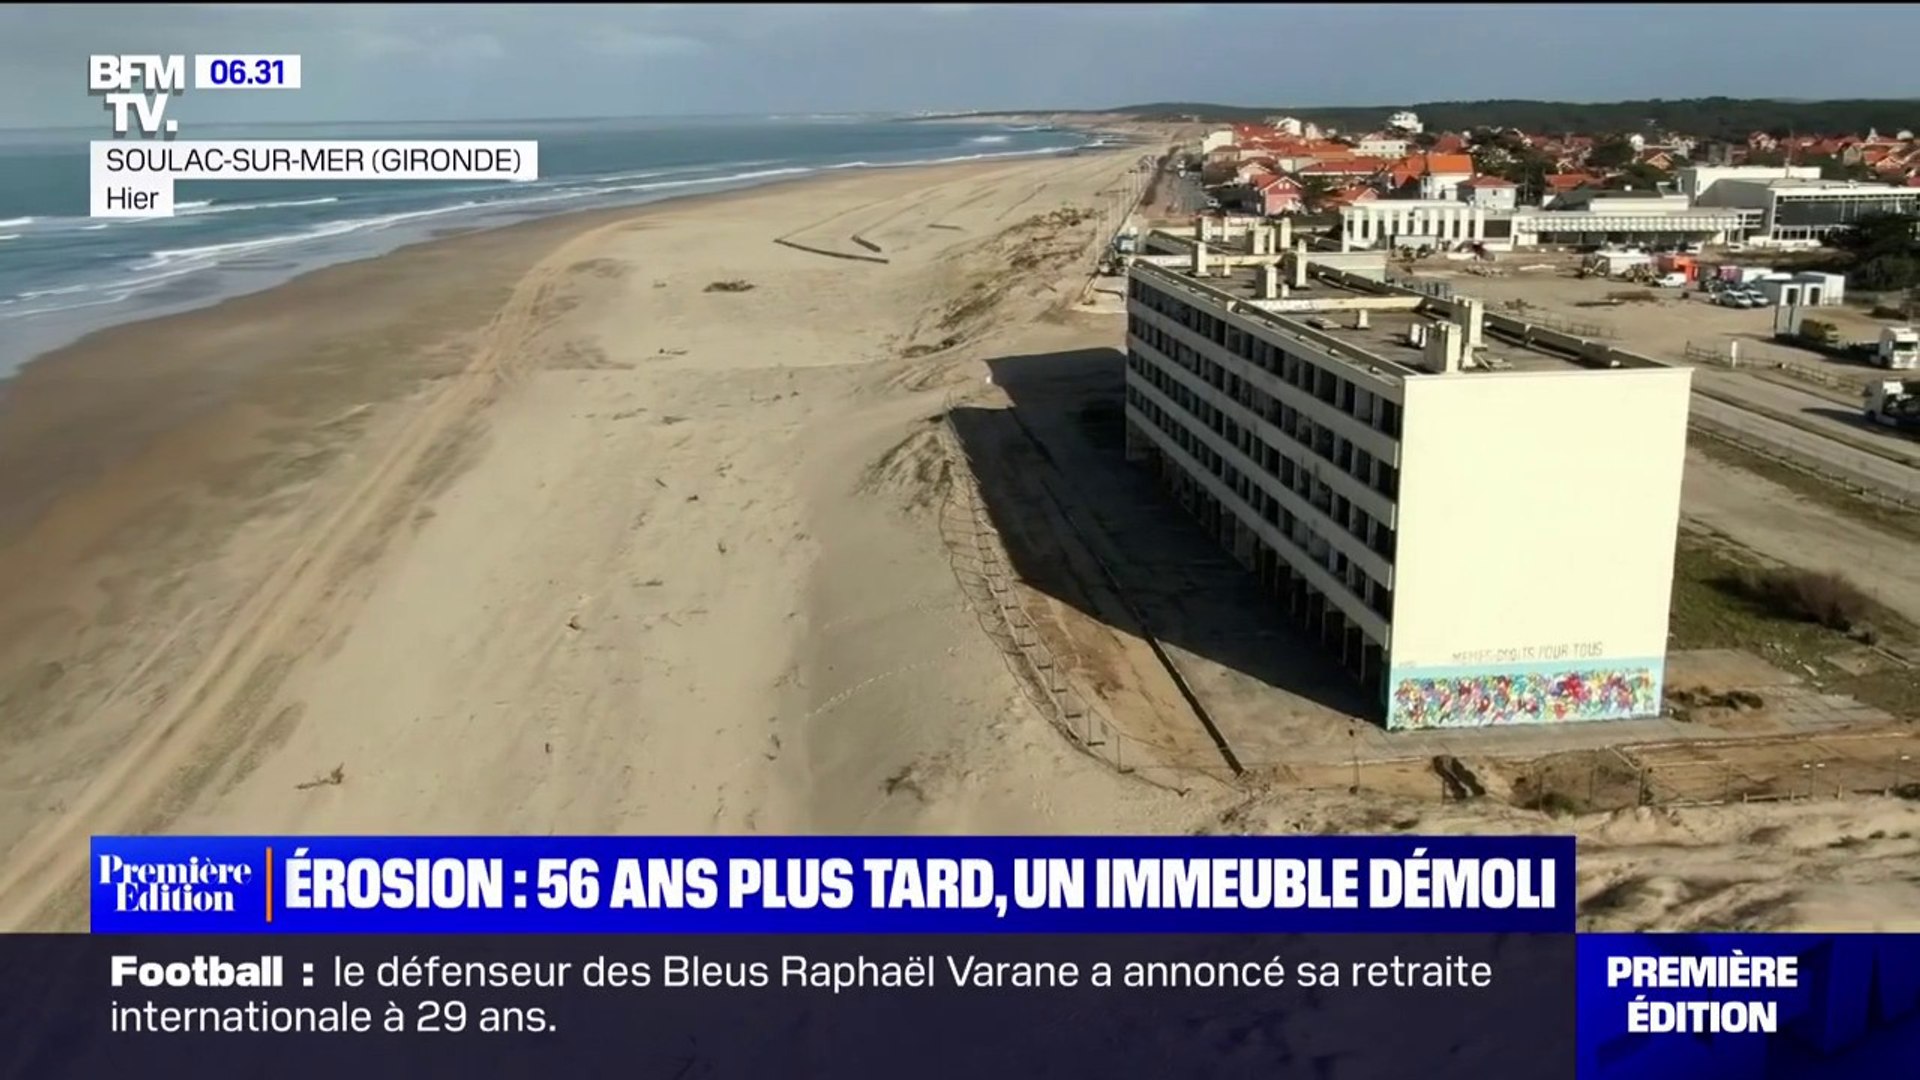 Les travaux de démolition de l'immeuble Le Signal à Soulac-sur-Mer, menacé  par l'érosion, débutent ce vendredi - Vidéo Dailymotion